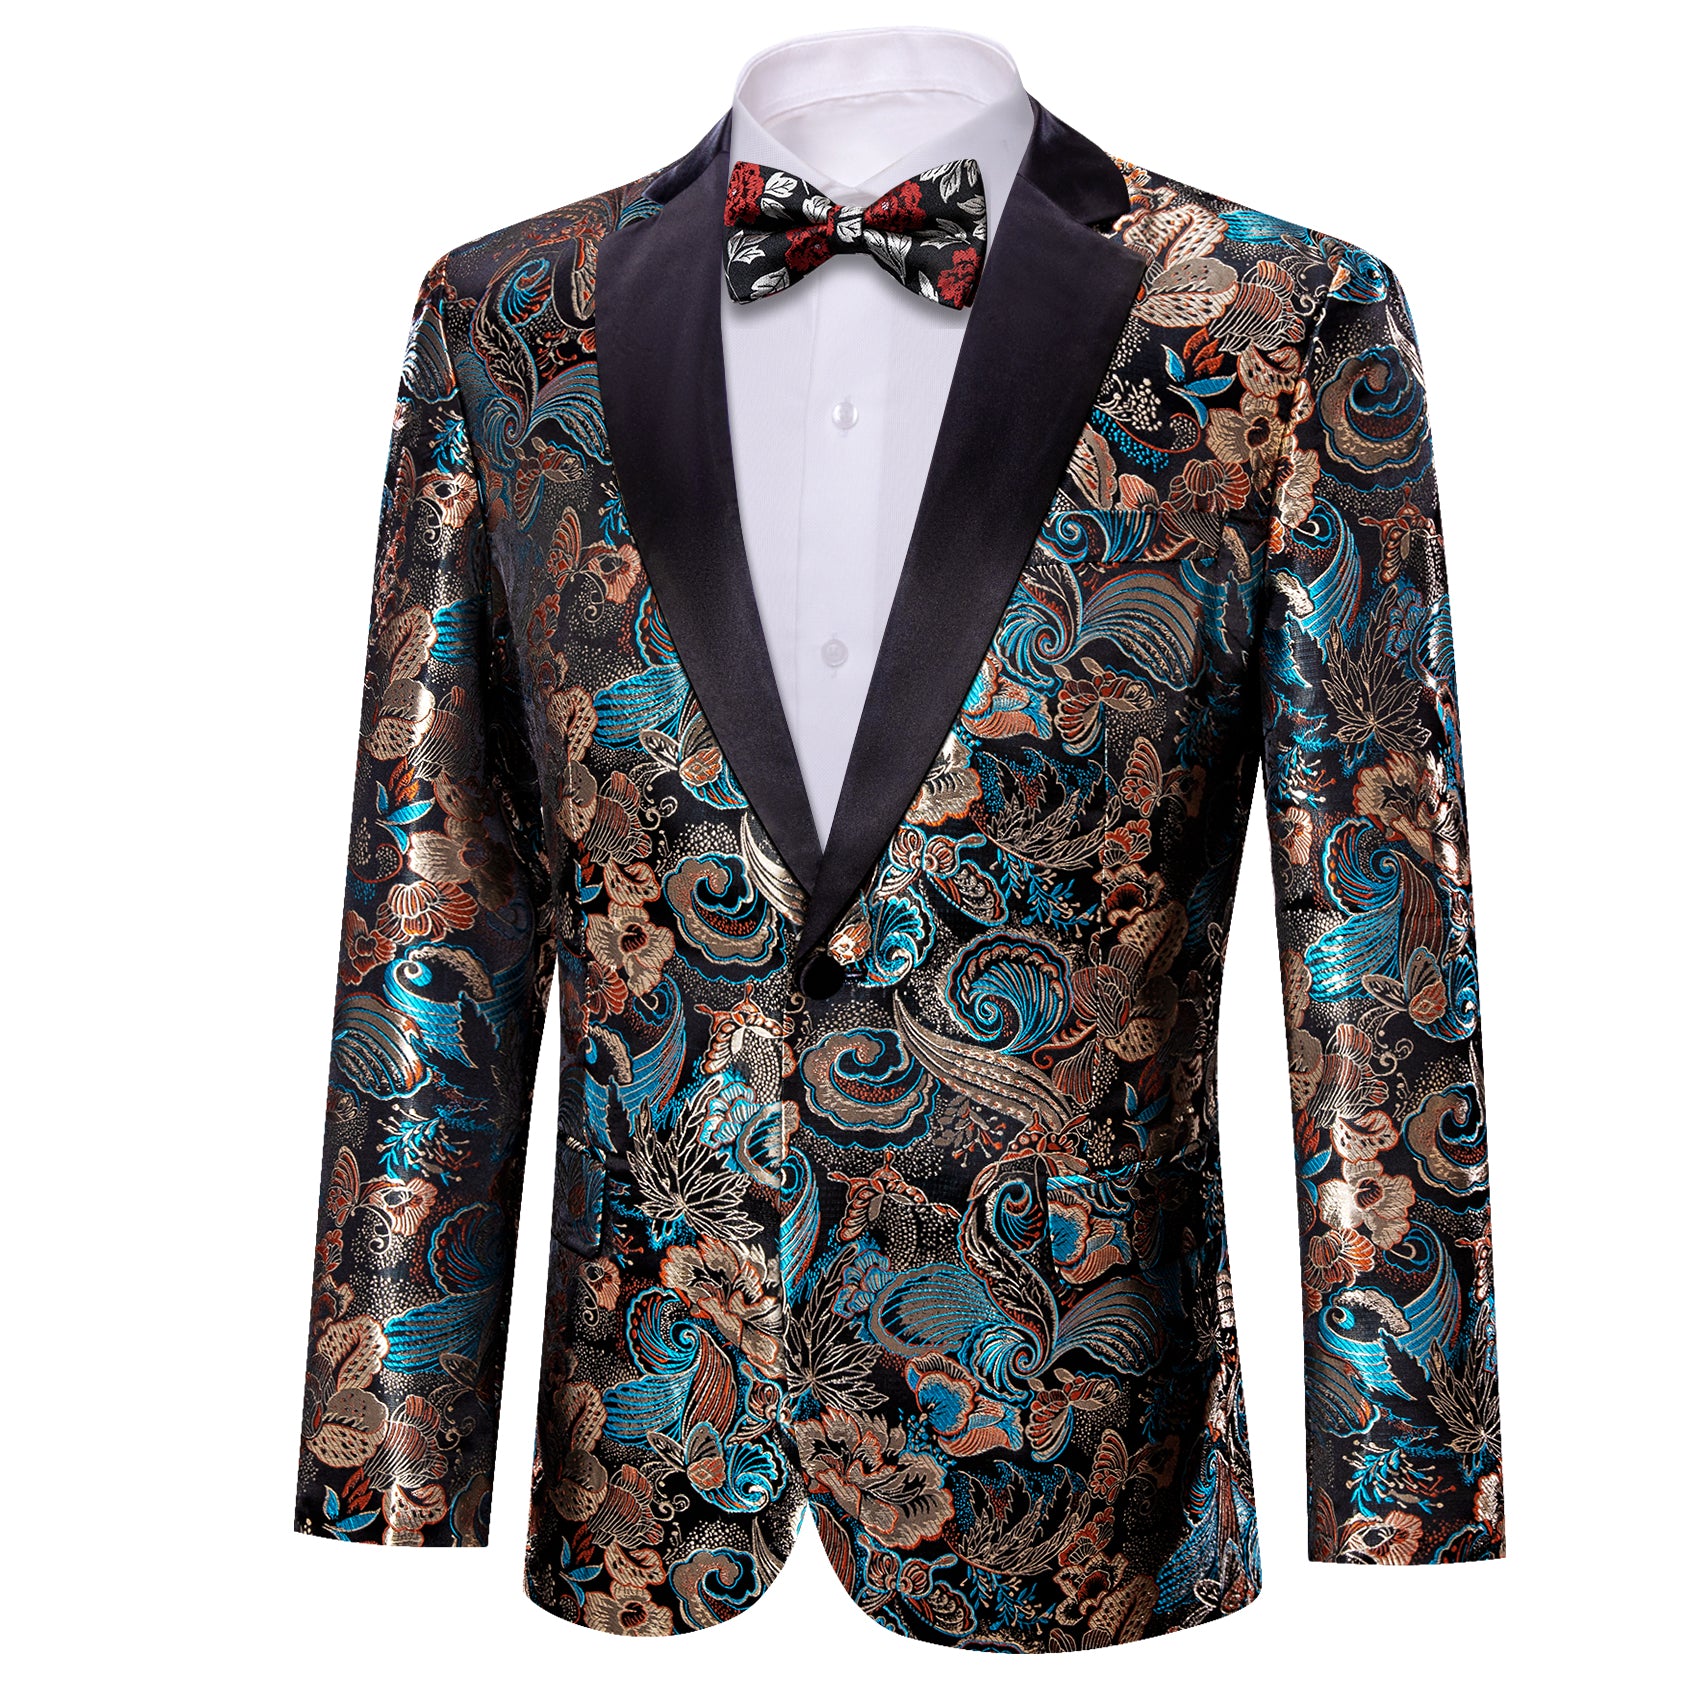 Men's Dress Party Brown Blue Floral Suit Jacket Slim One Button Stylish Blazer